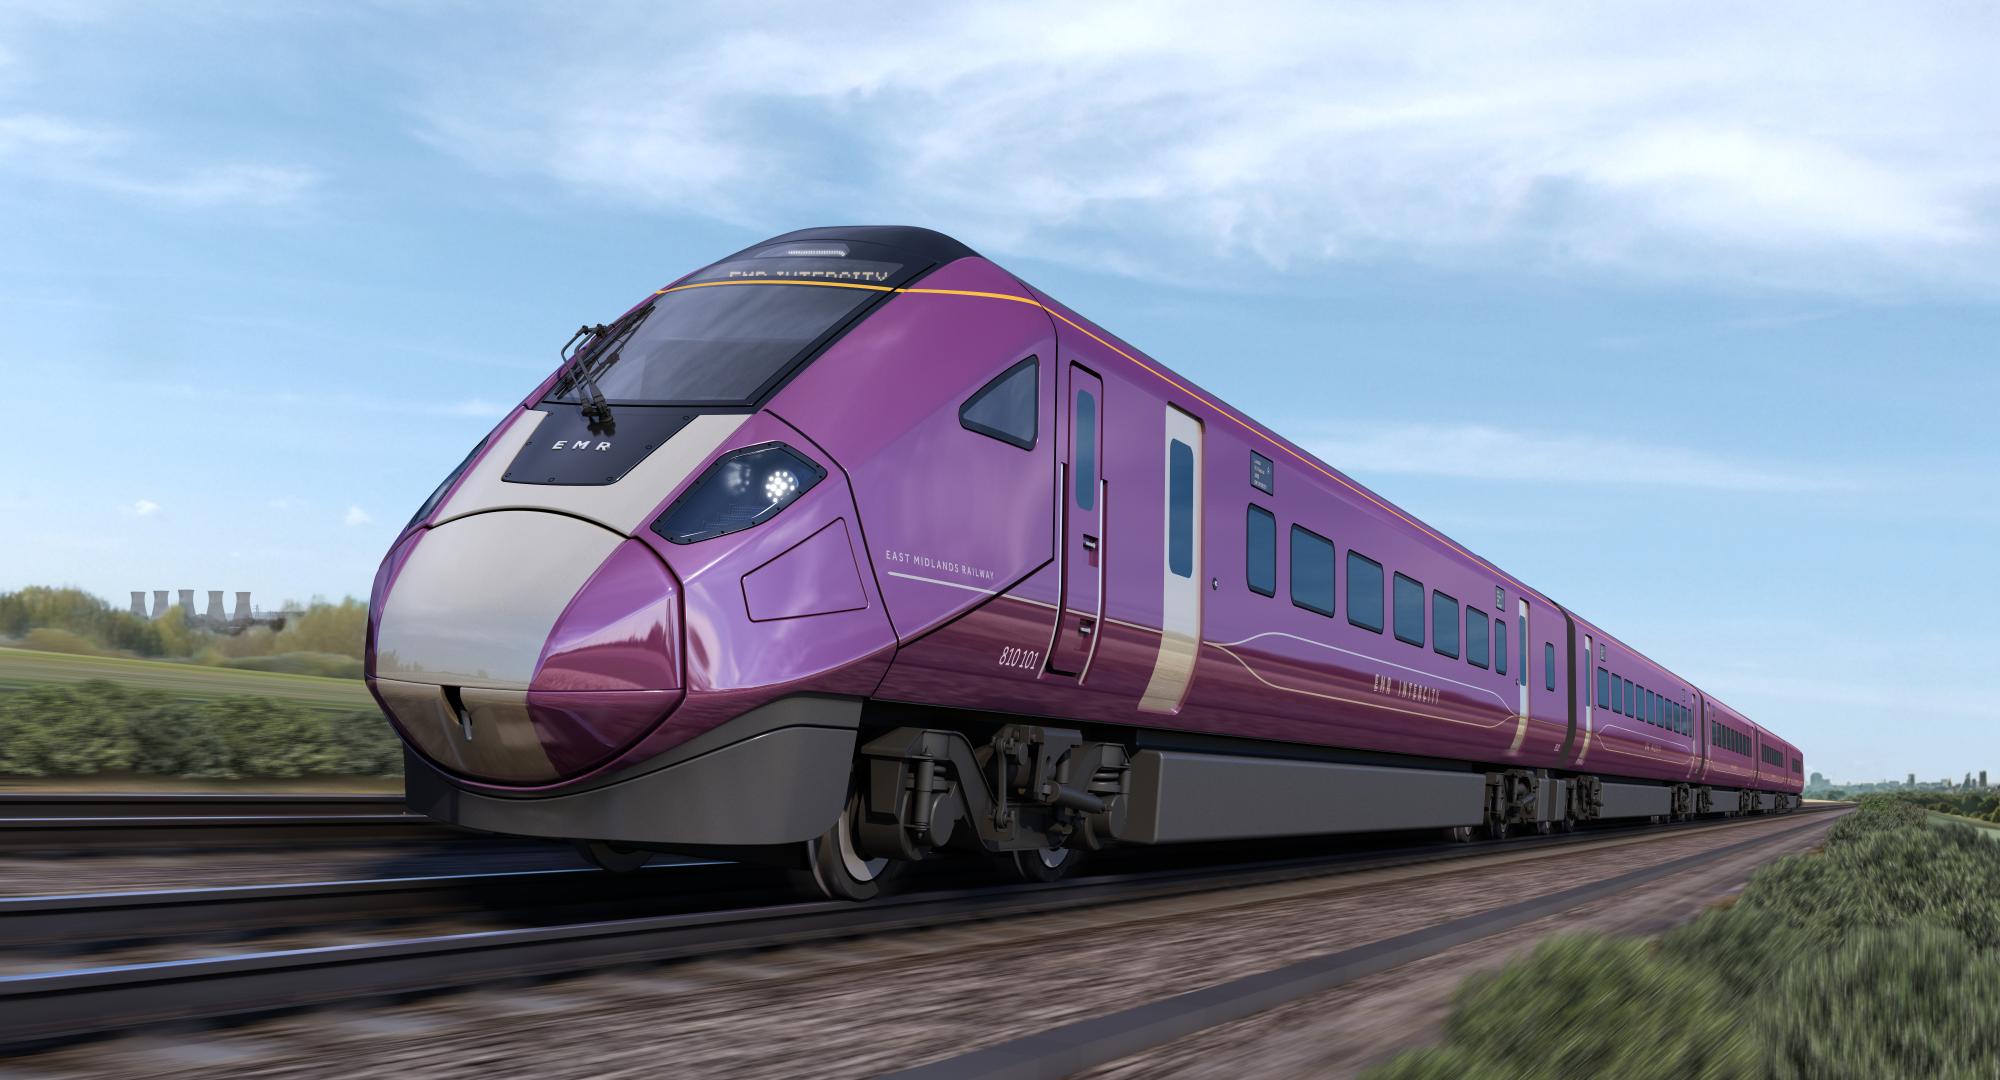 New EMR Aurora train